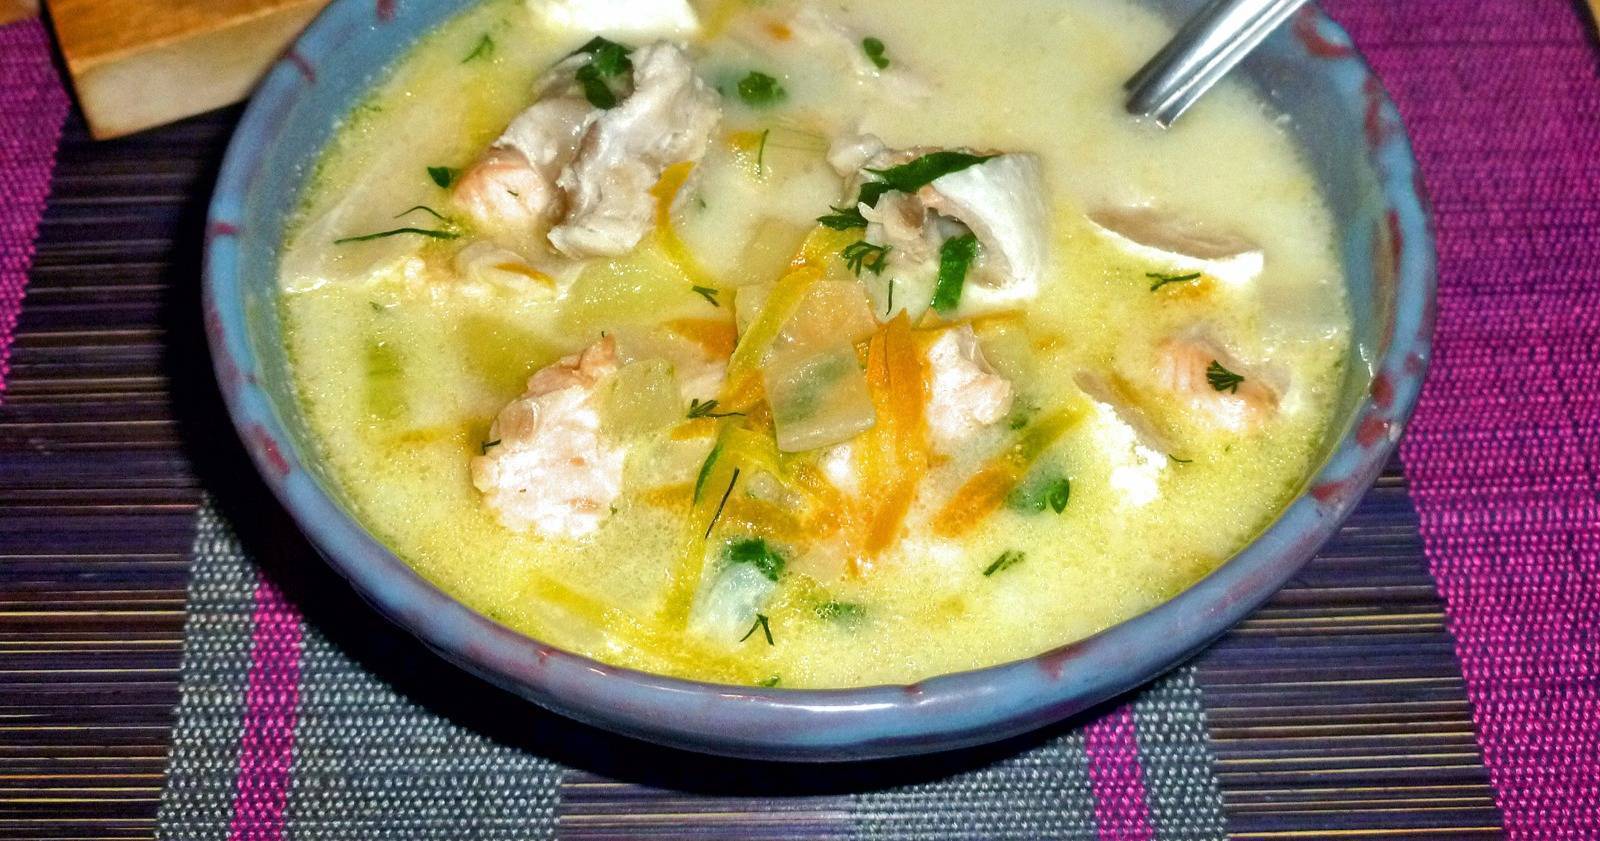 Вкуснейший рыбный суп из трески - классический рецепт с пошаговыми фото